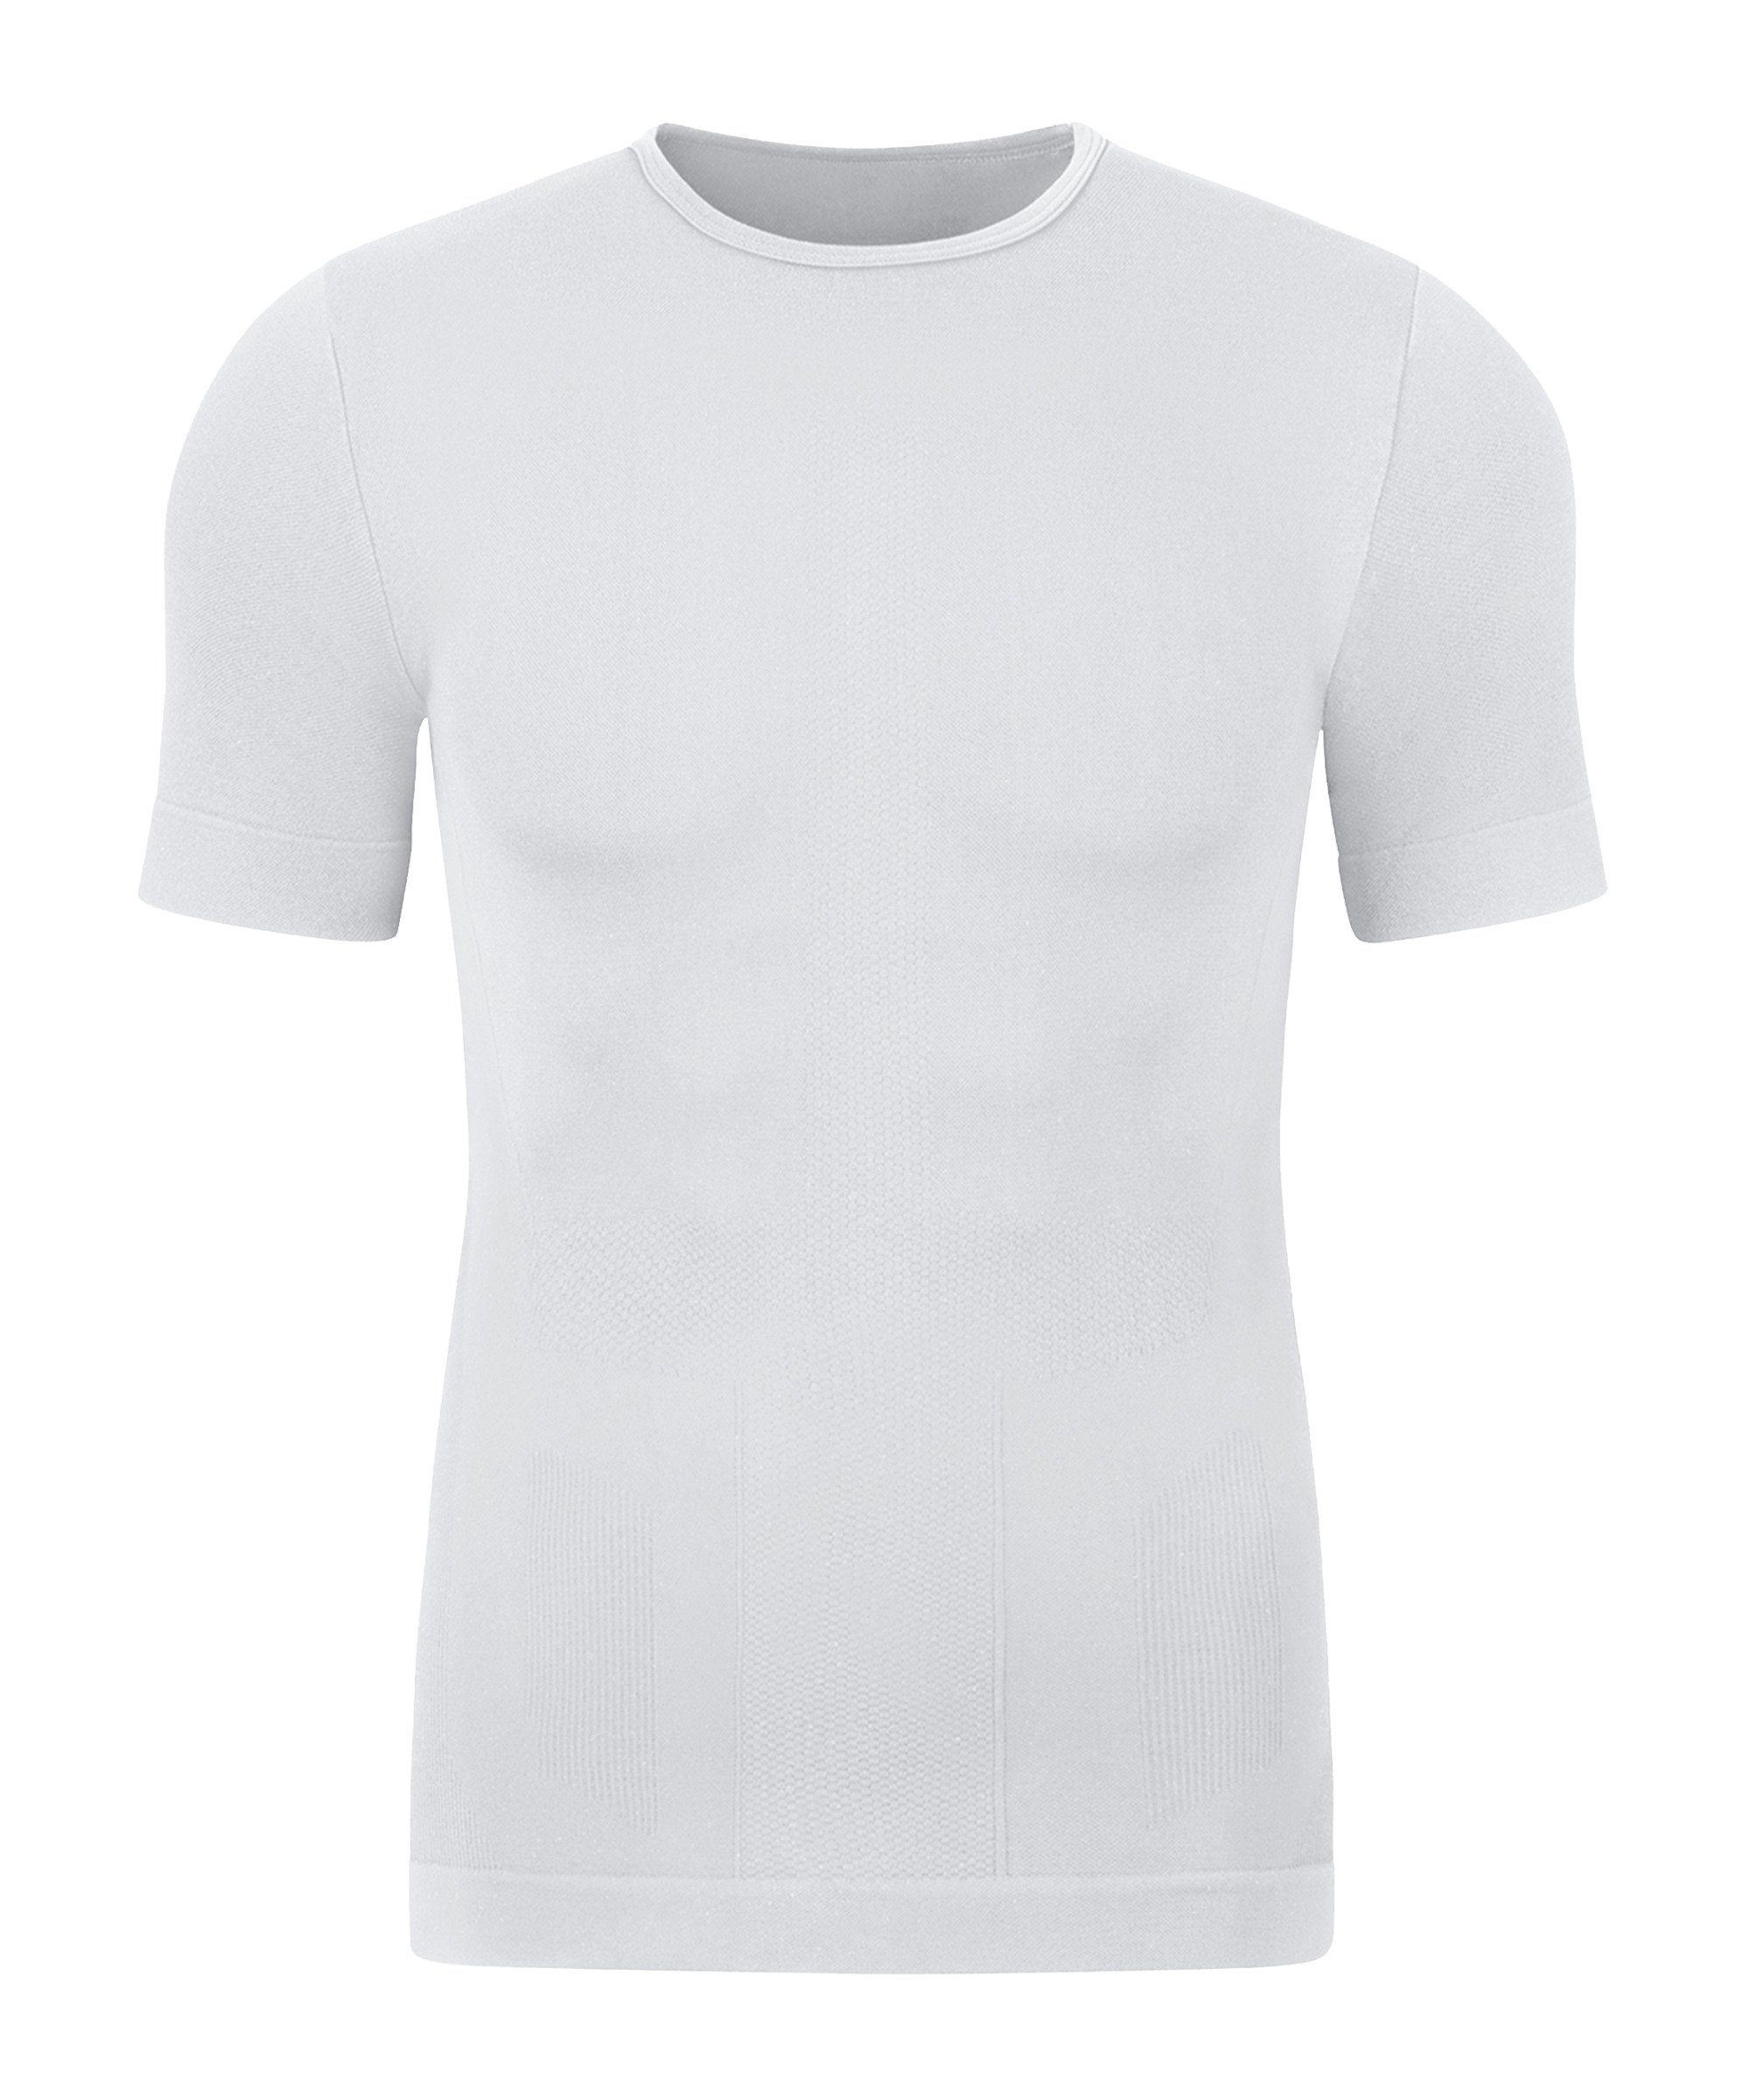 Jako T-Shirt weiss 2.0 default T-Shirt Skinbalance